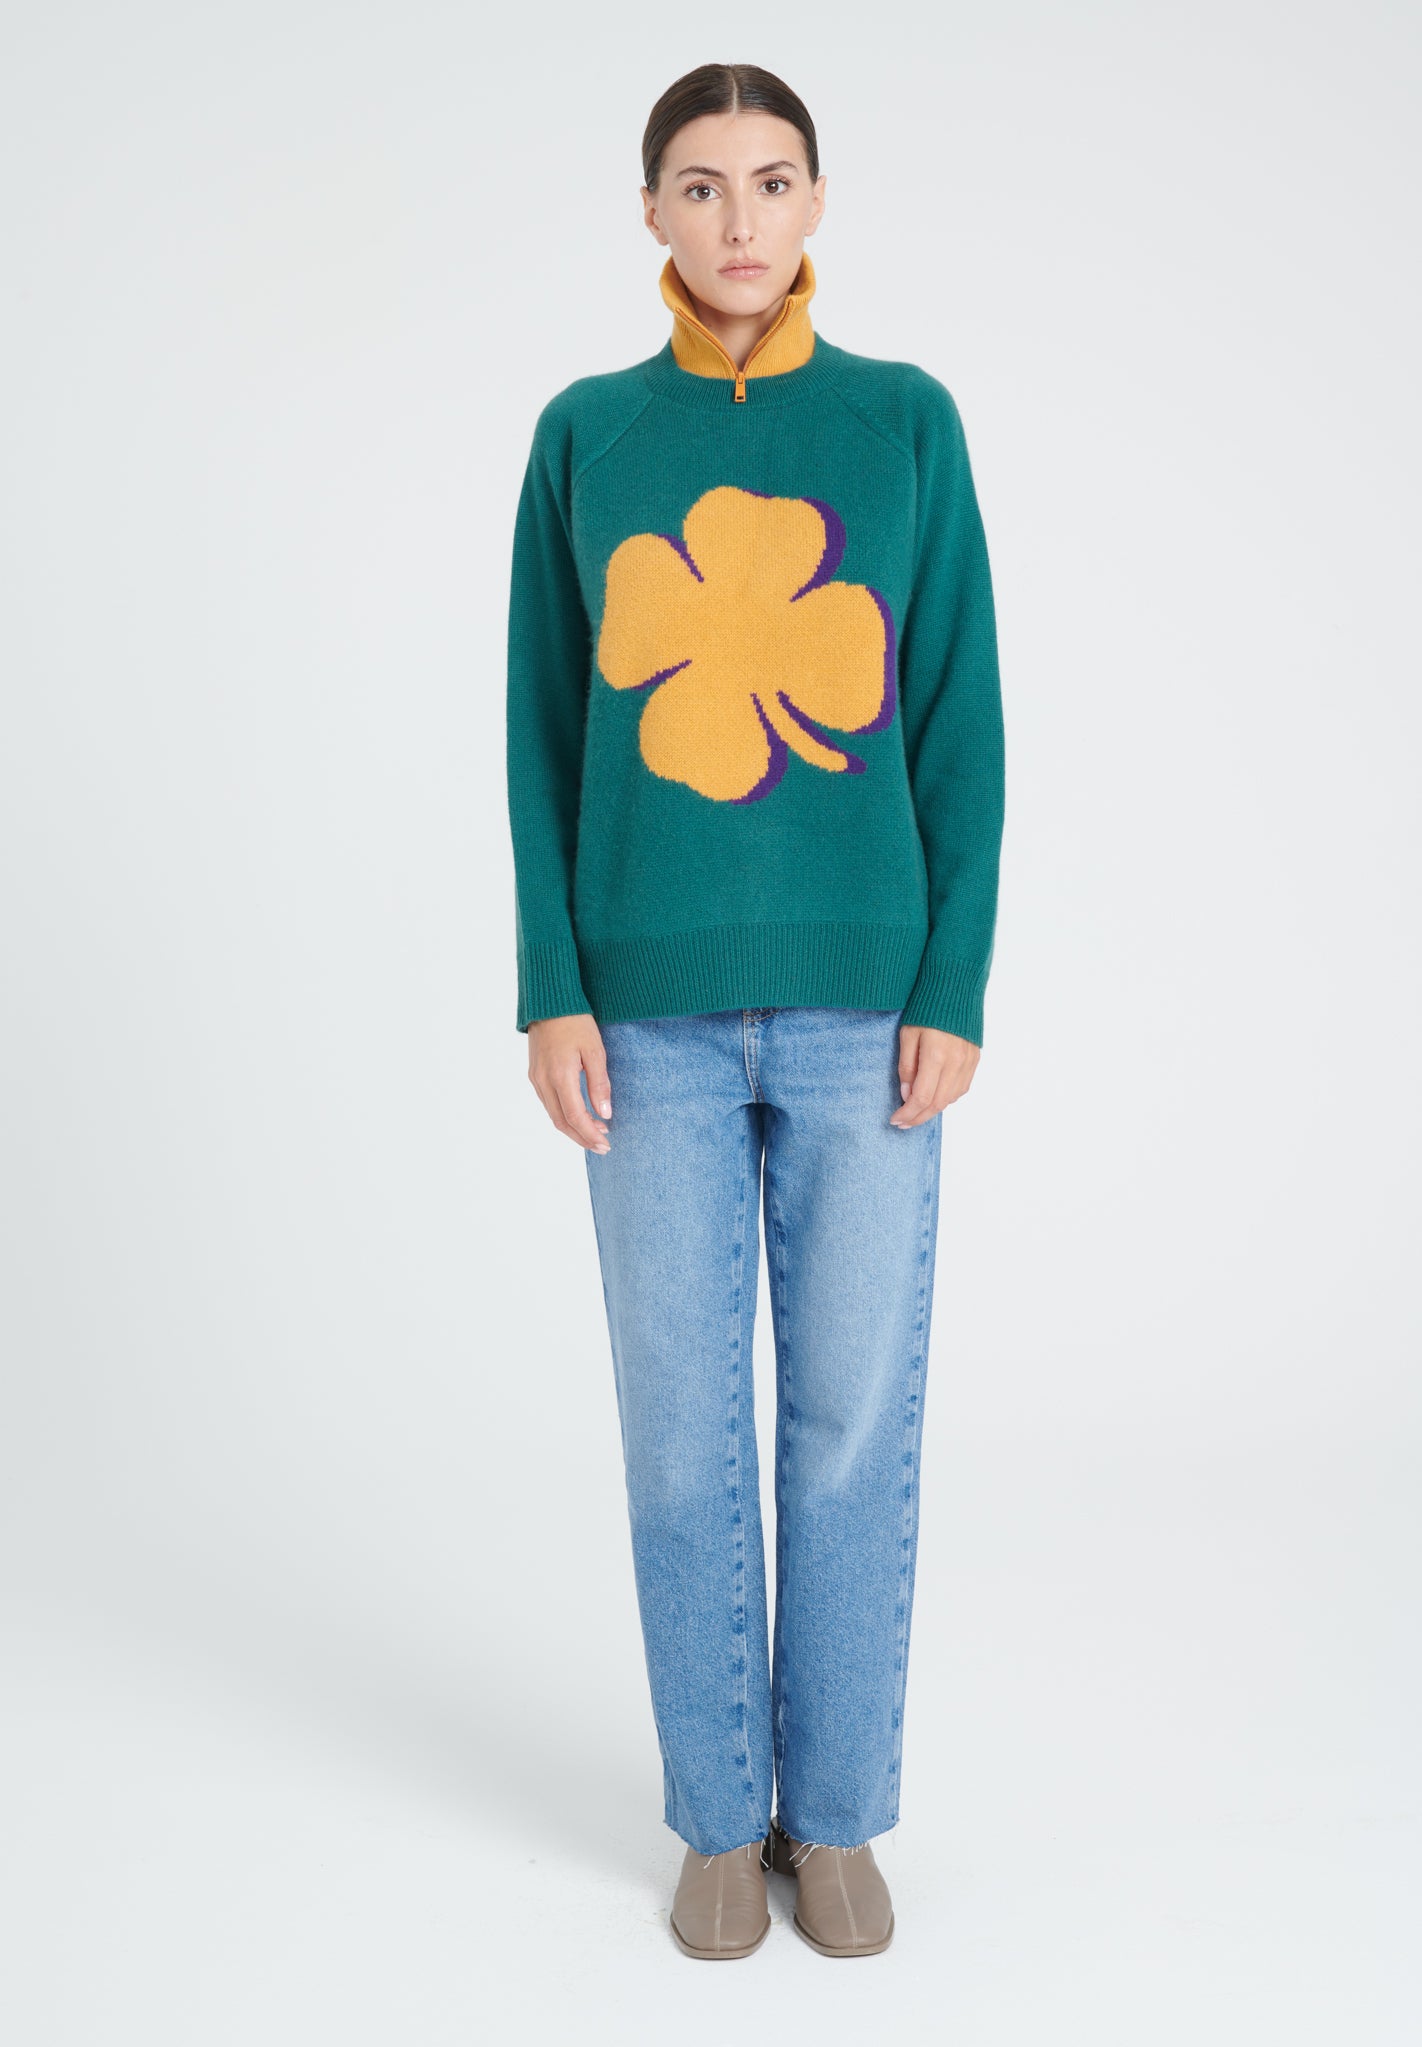 ZAYA 10 Round neck sweater with raglan sleeves in dark green 4-thread clover jacquard cashmere